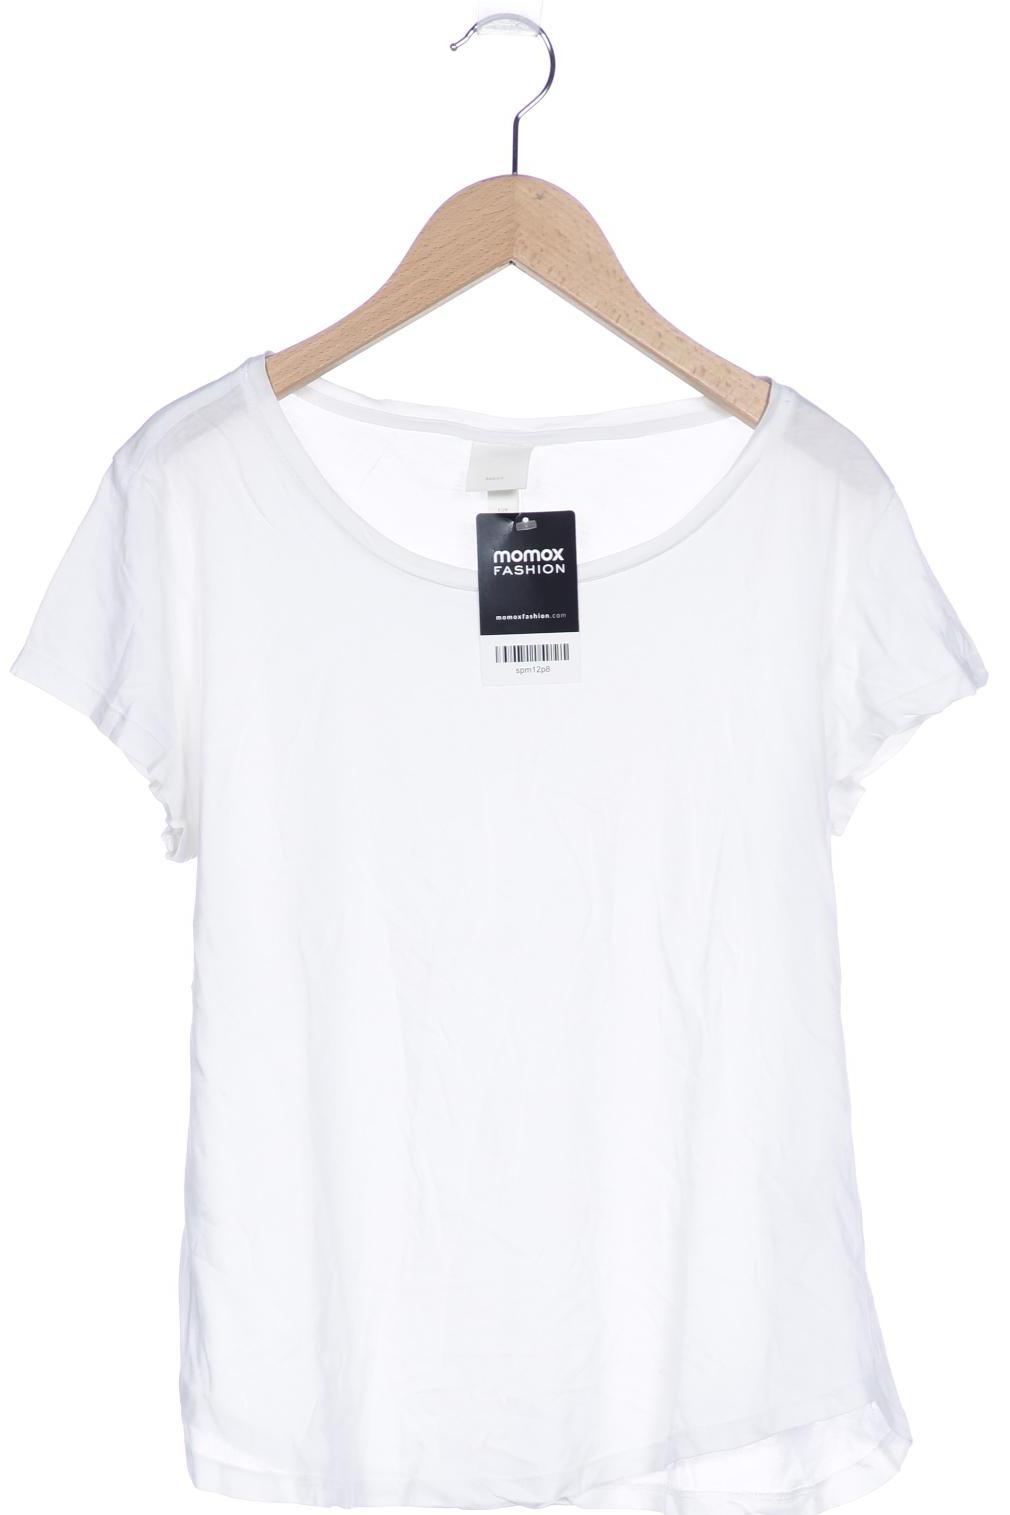 H&M Damen T-Shirt, weiß von H&M